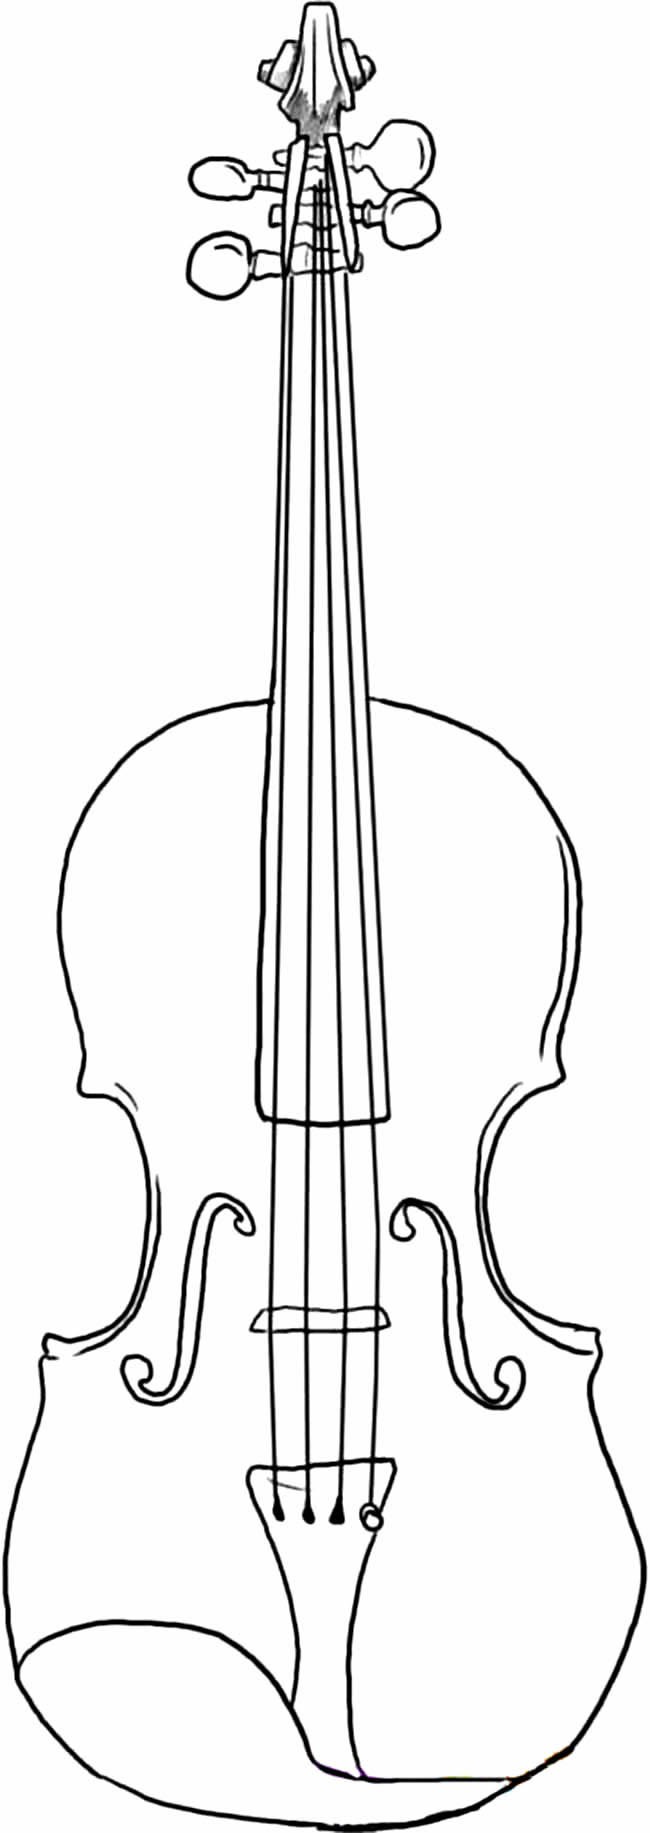 小提琴乐器简笔画物品 小提琴乐器物品简笔画步骤图片大全